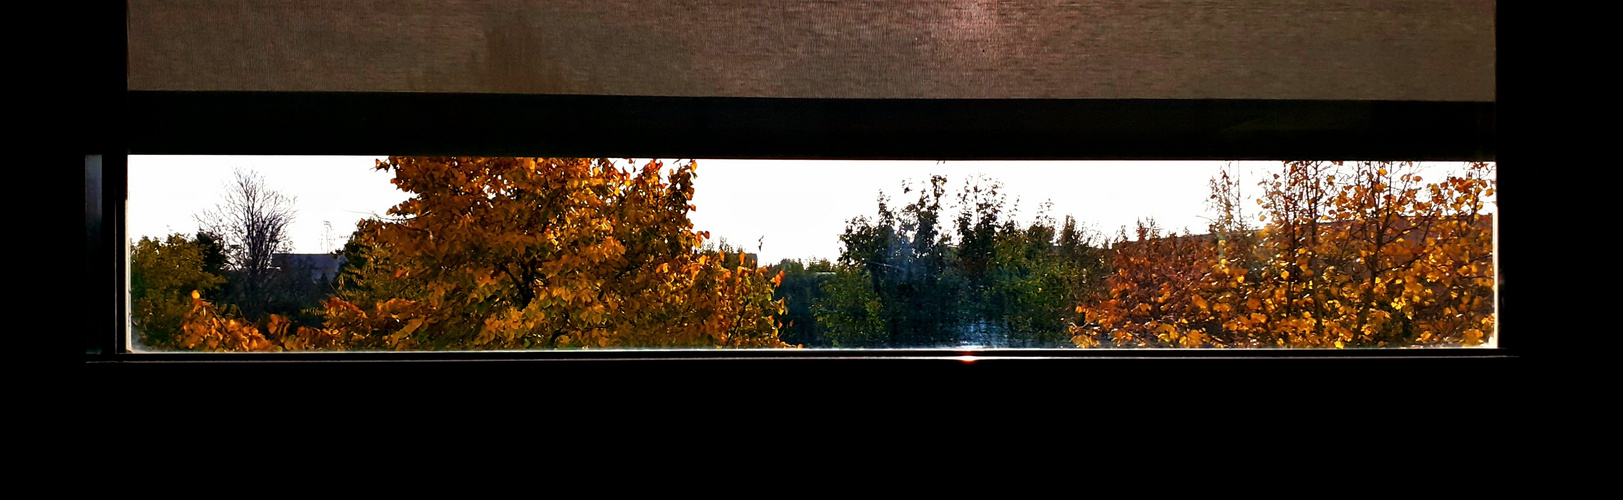 Scorcio d'autunno dalla finestra dell'ufficio